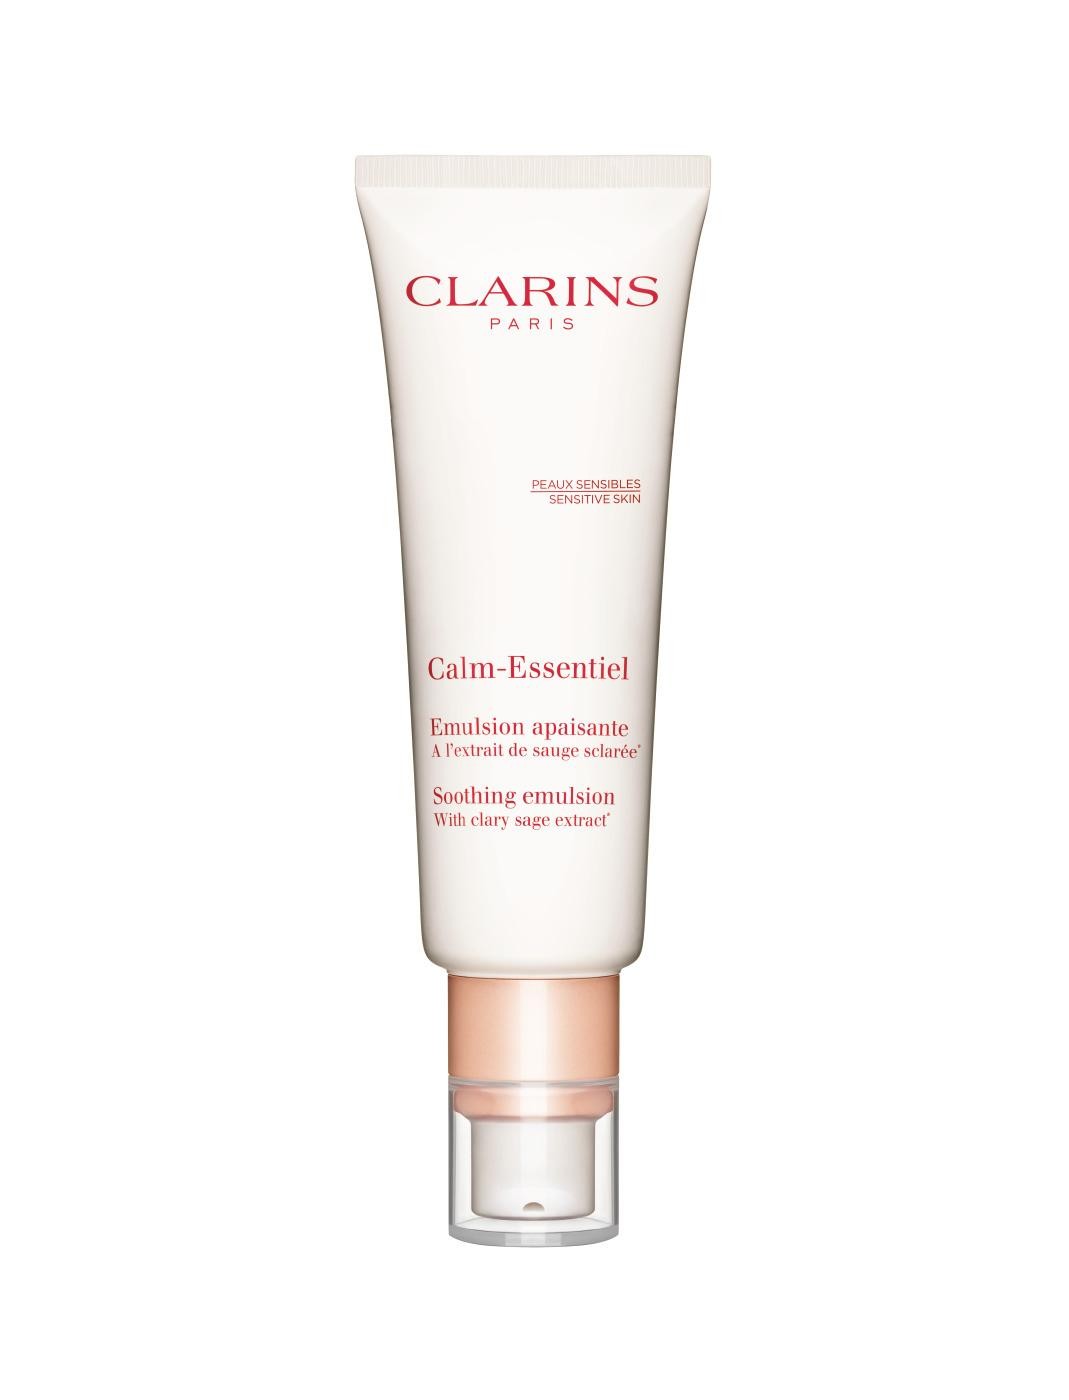 Clarins Calm-Essentiel Emulsione lenitiva 50ml